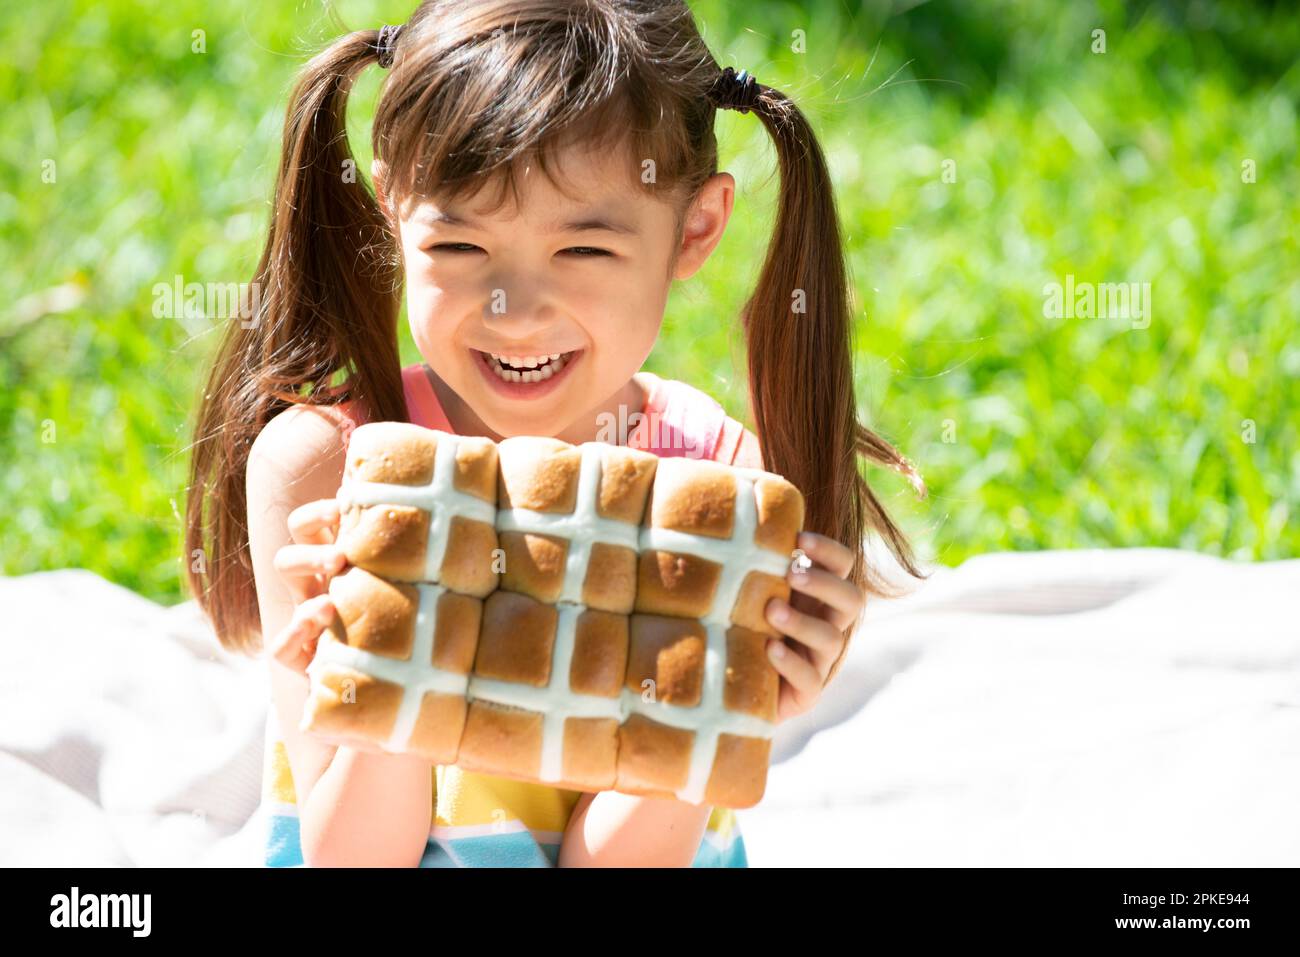 Girl holding Easter hot cross buns Stock Photo